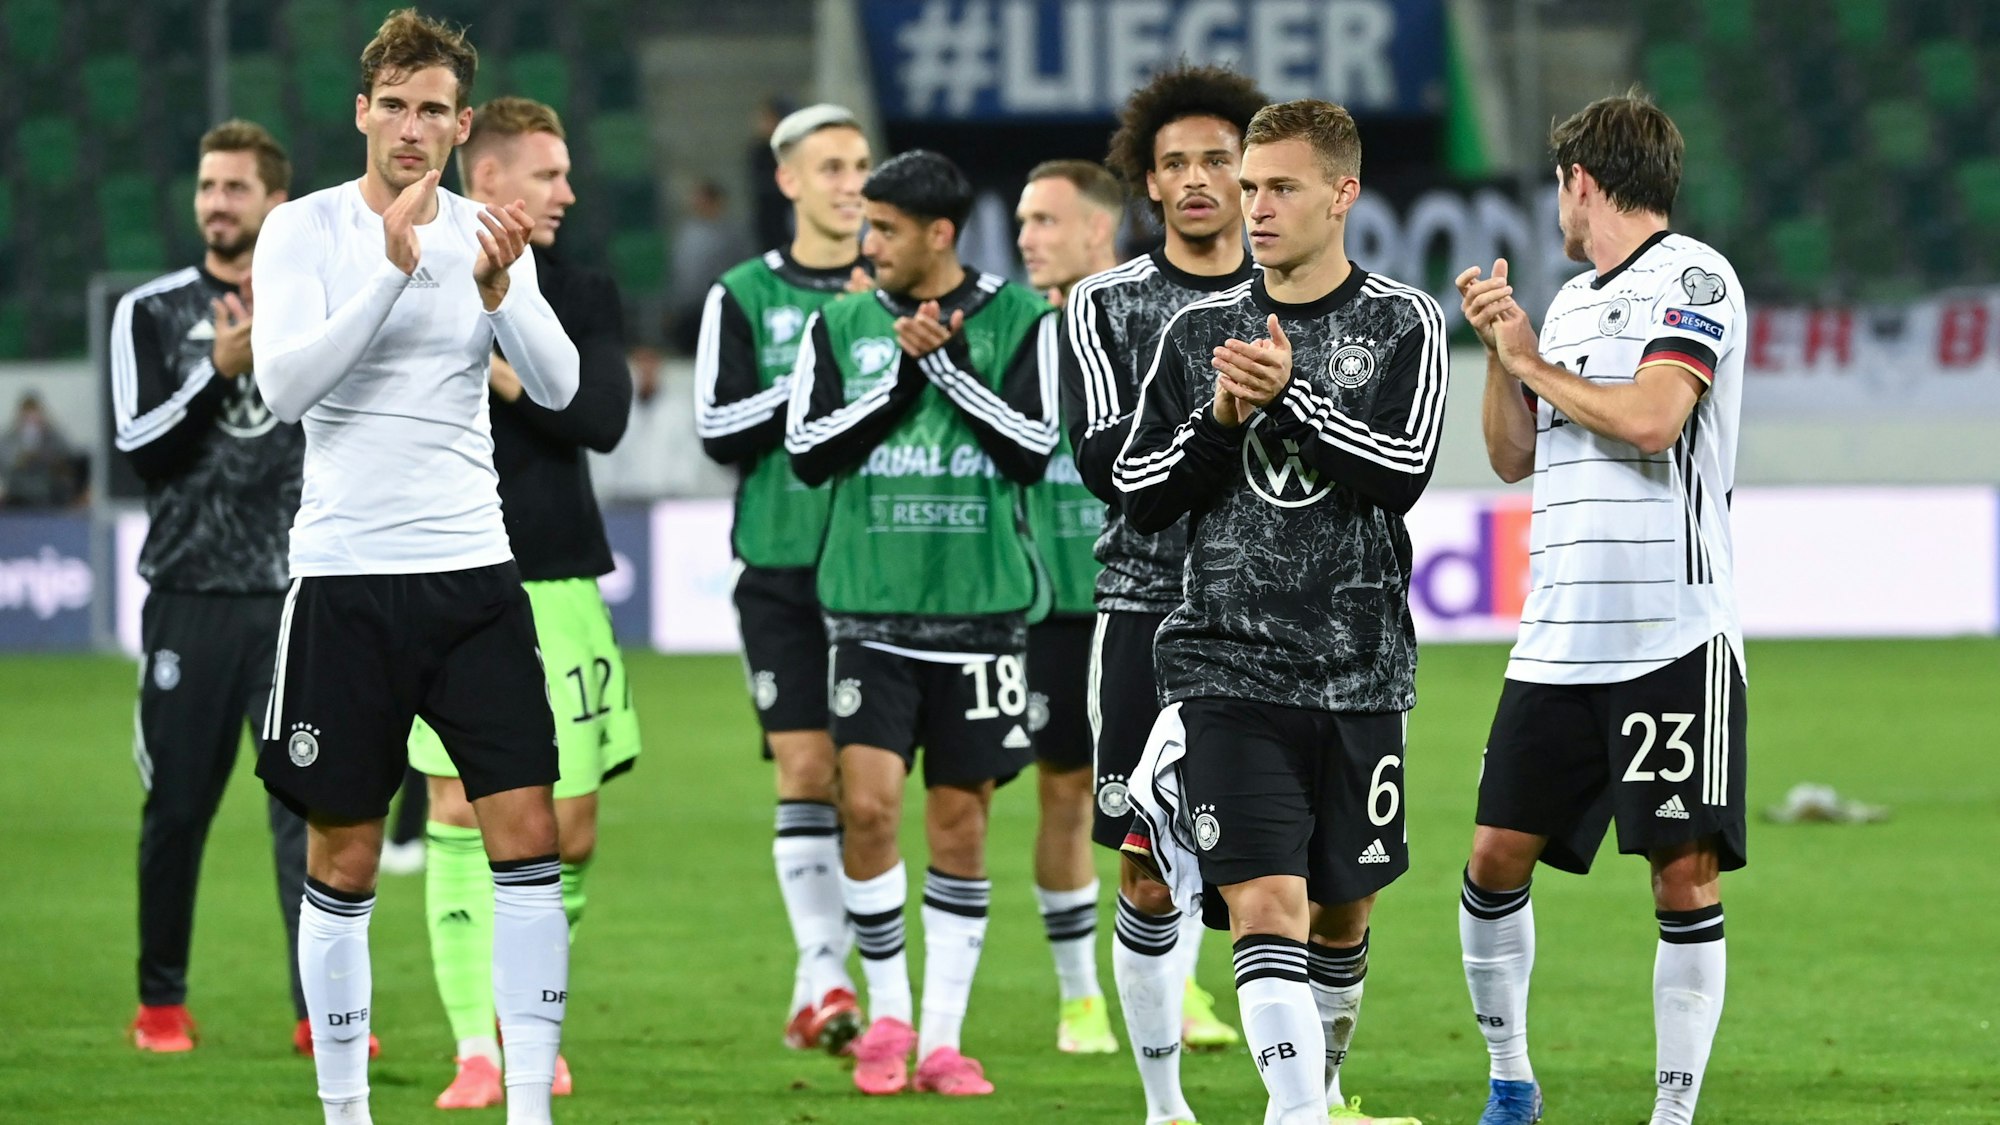 Die deutschen Spieler applaudieren nach dem Spiel in St. Gallen den Fans.